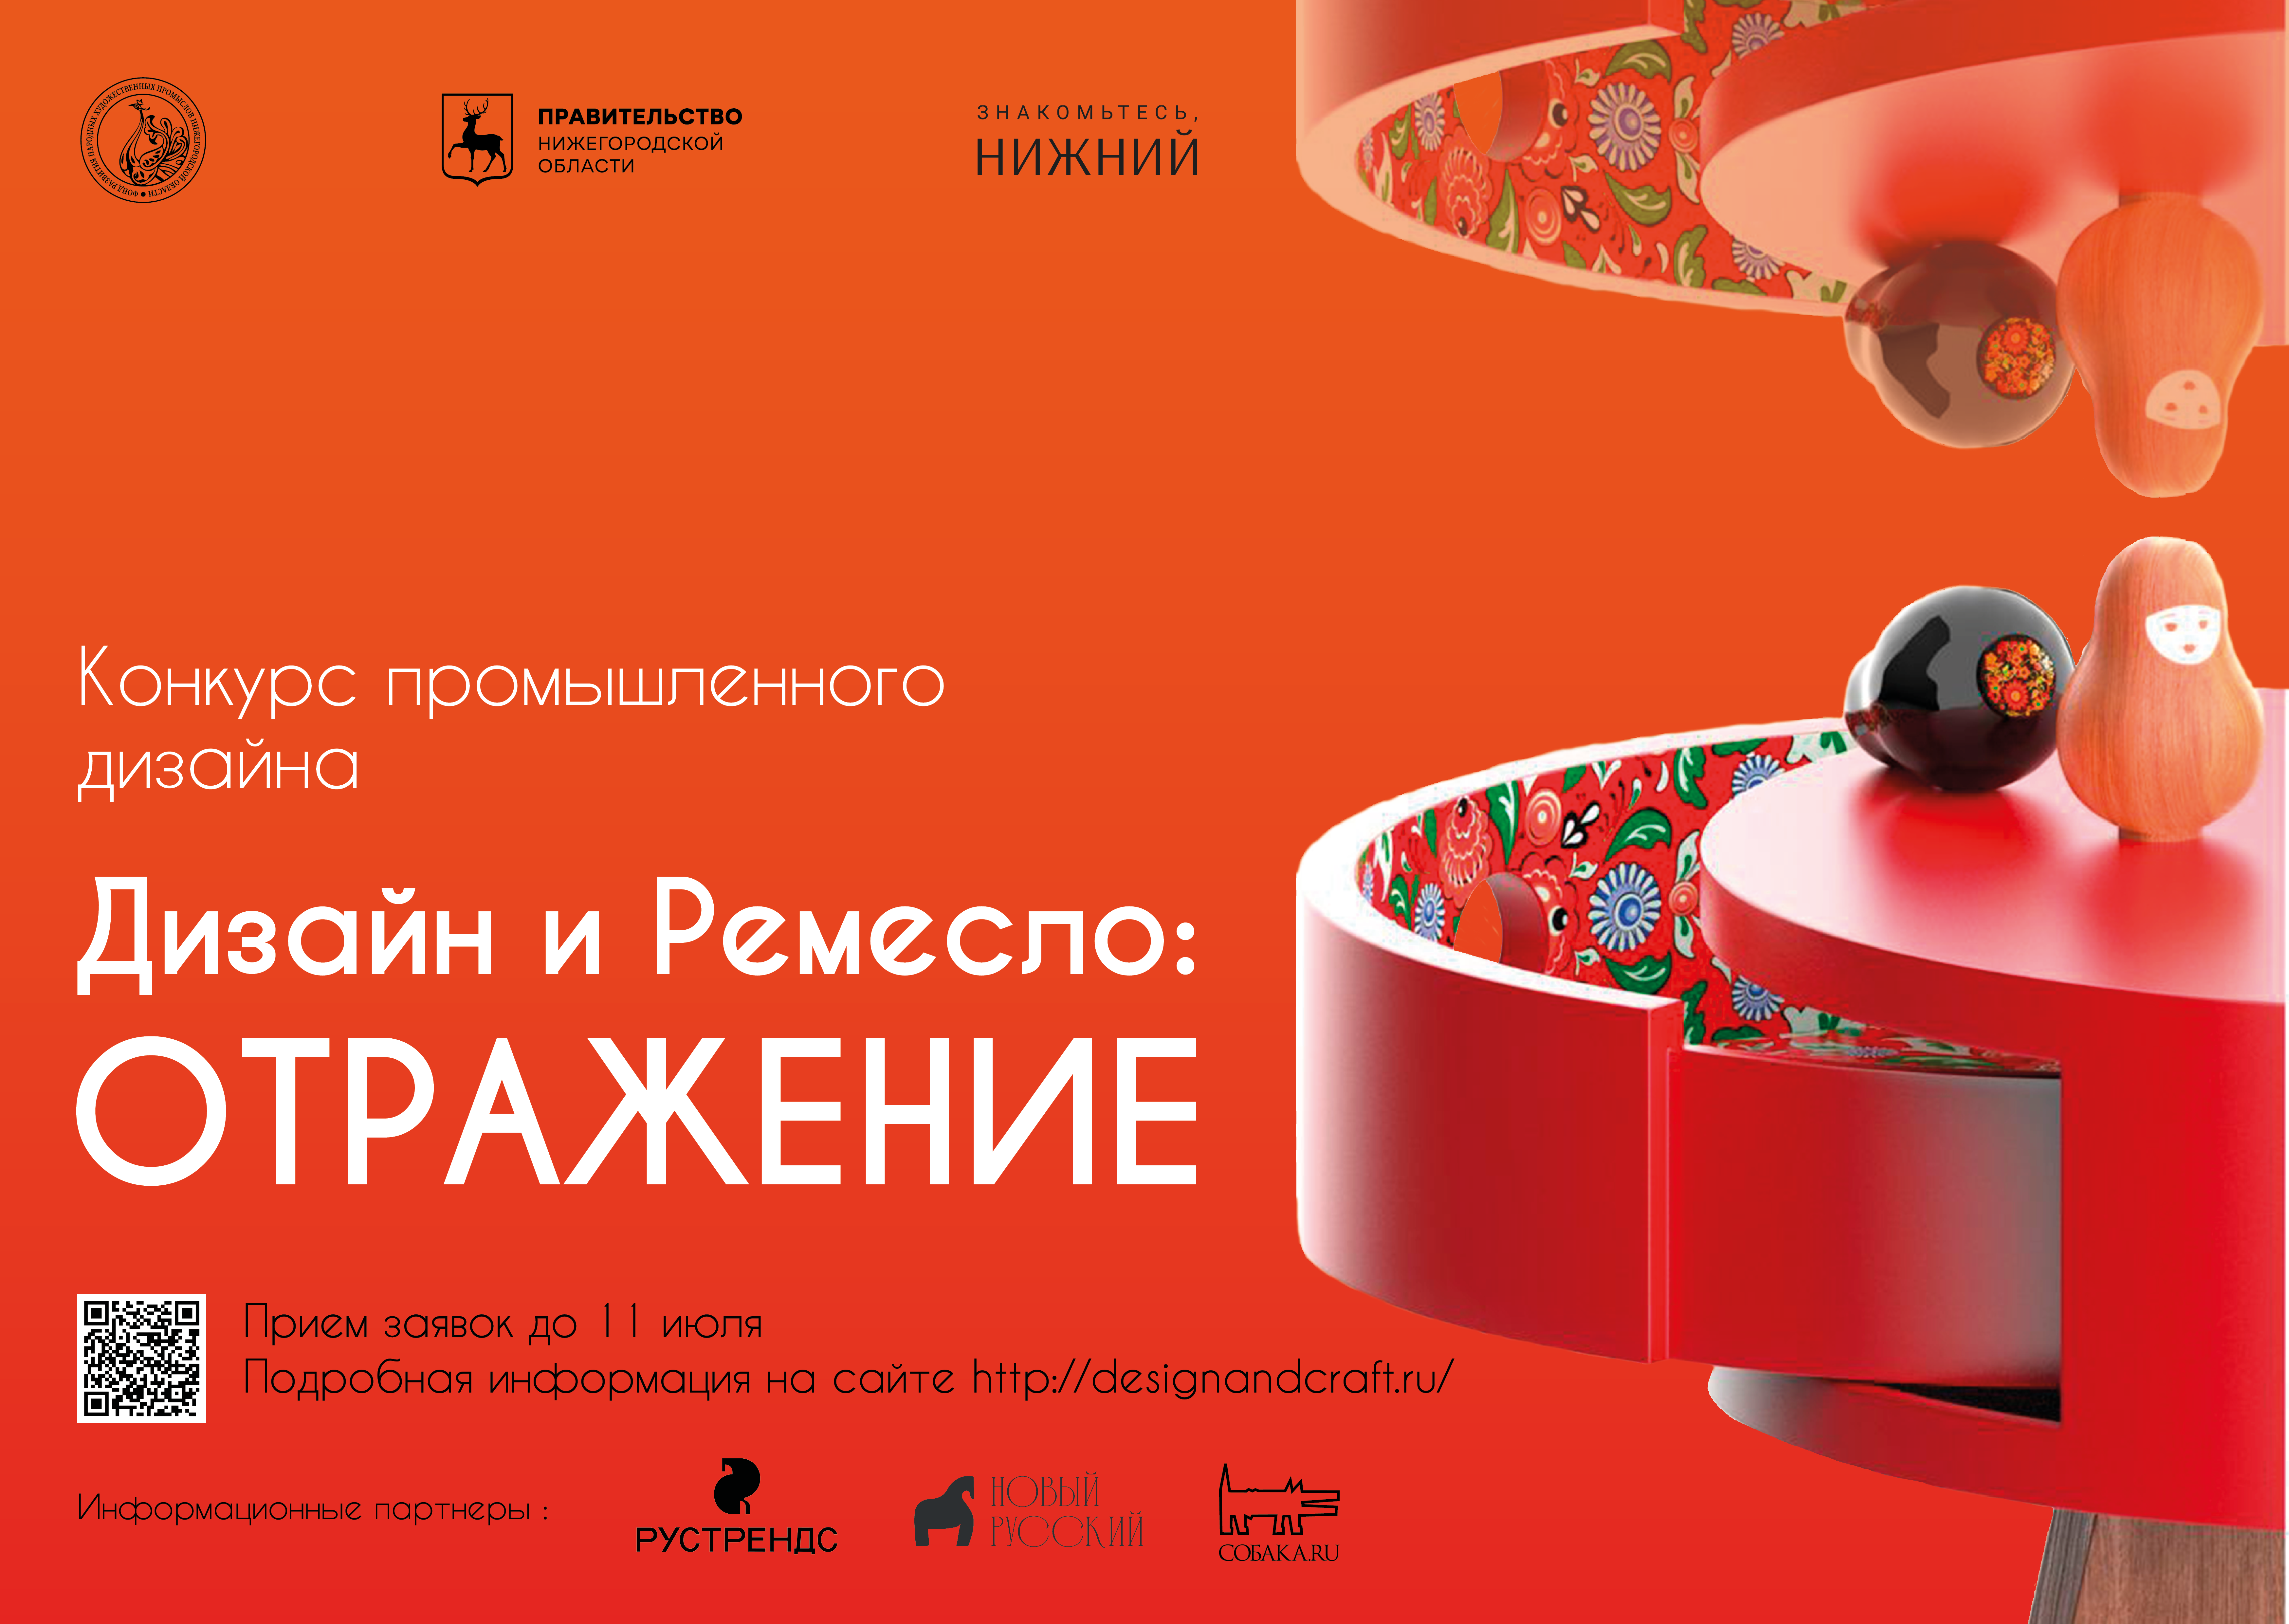 В Нижегородской области стартовал прием заявок на конкурс промышленного дизайна «Дизайн и ремесло: Отражение»